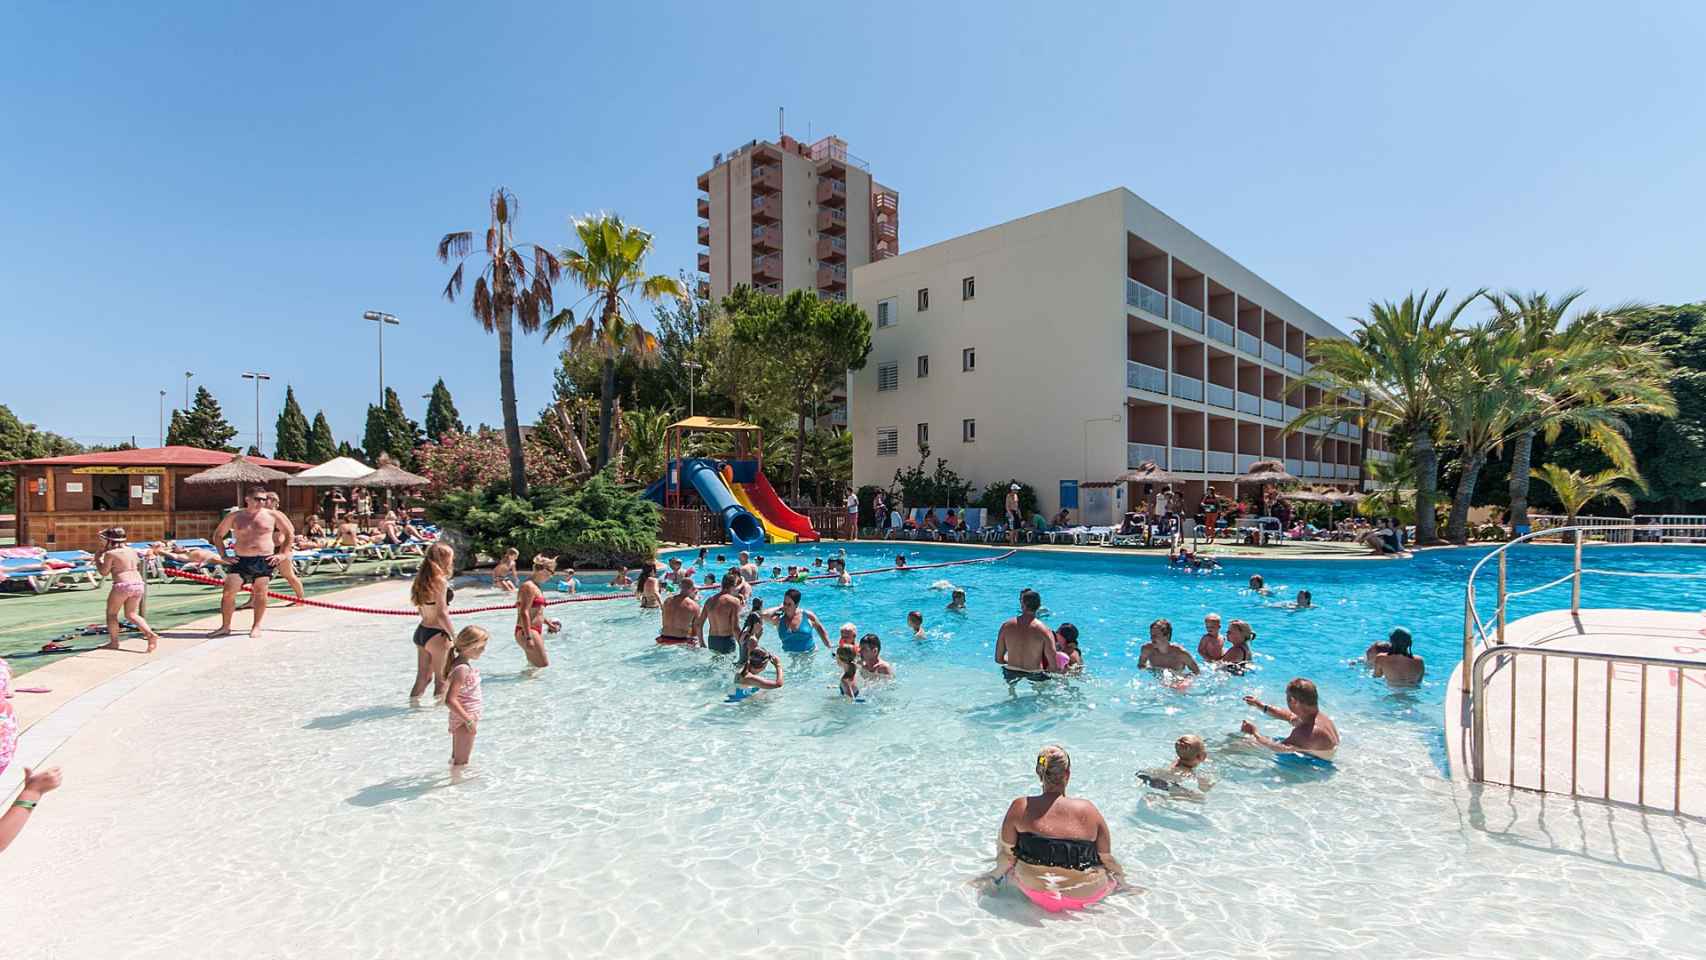 Imagen del Hotel Eurocalas de Mallorca tomada desde la piscina / CG